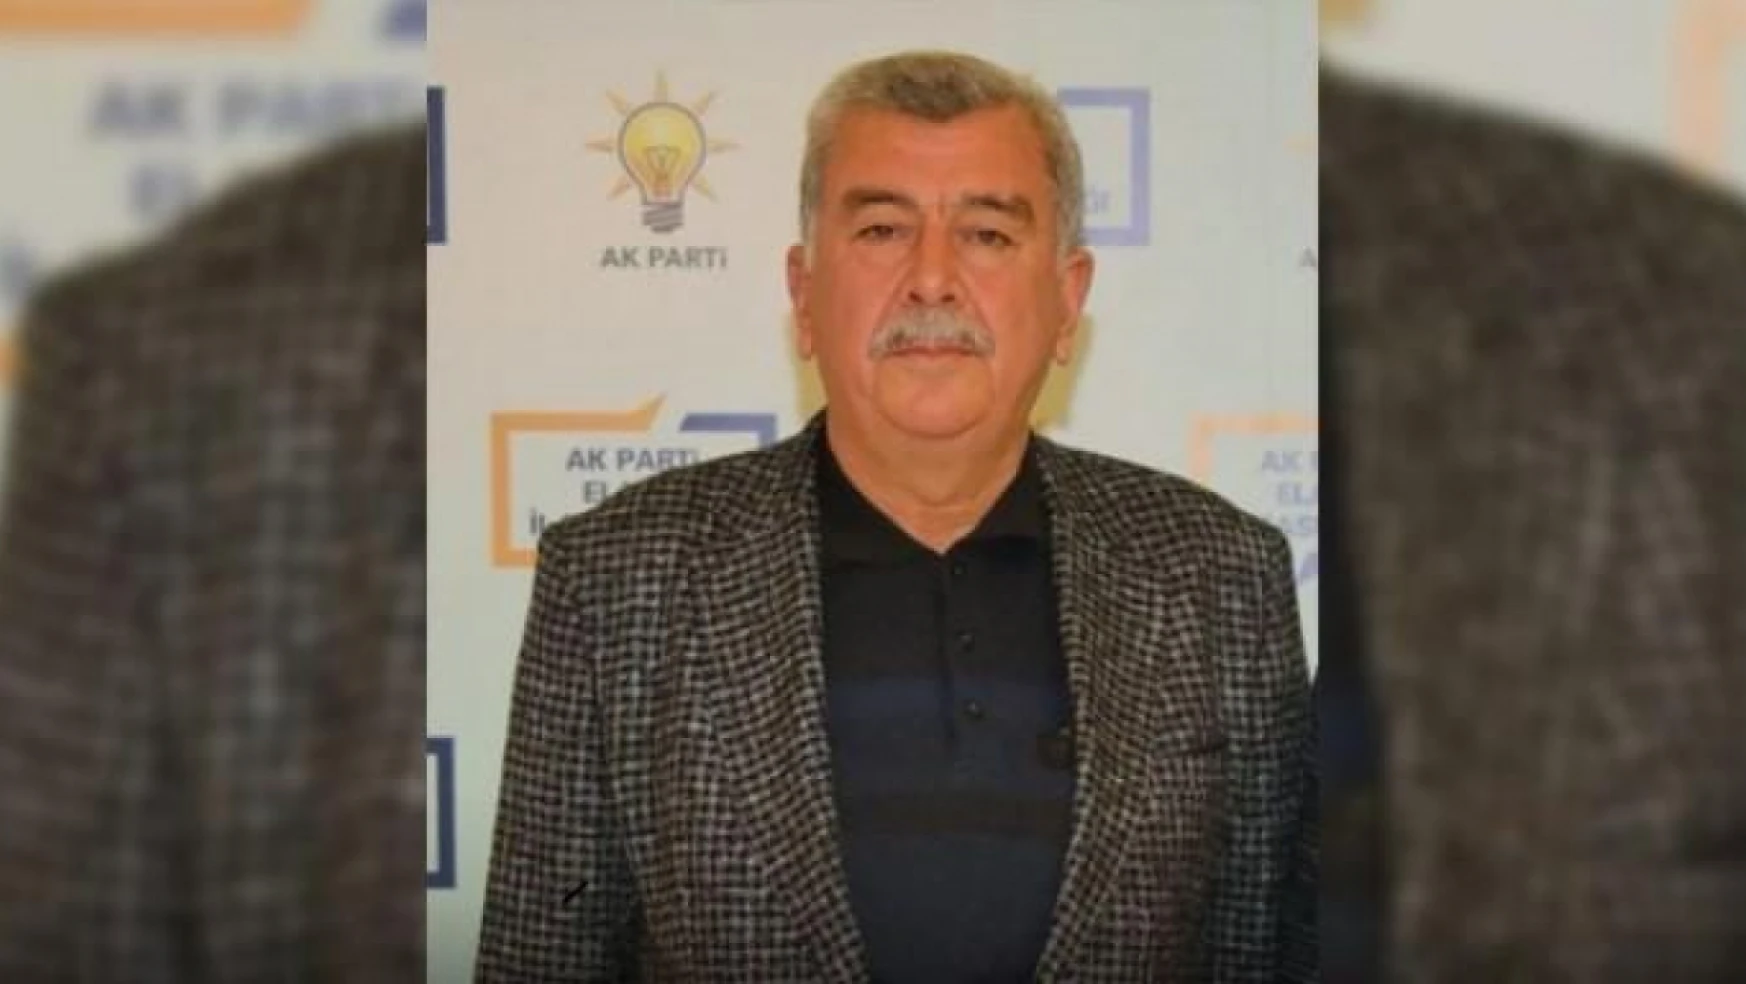 AK Parti Baskil ilçe başkanı Fuat Çetin görevinden istifa etti